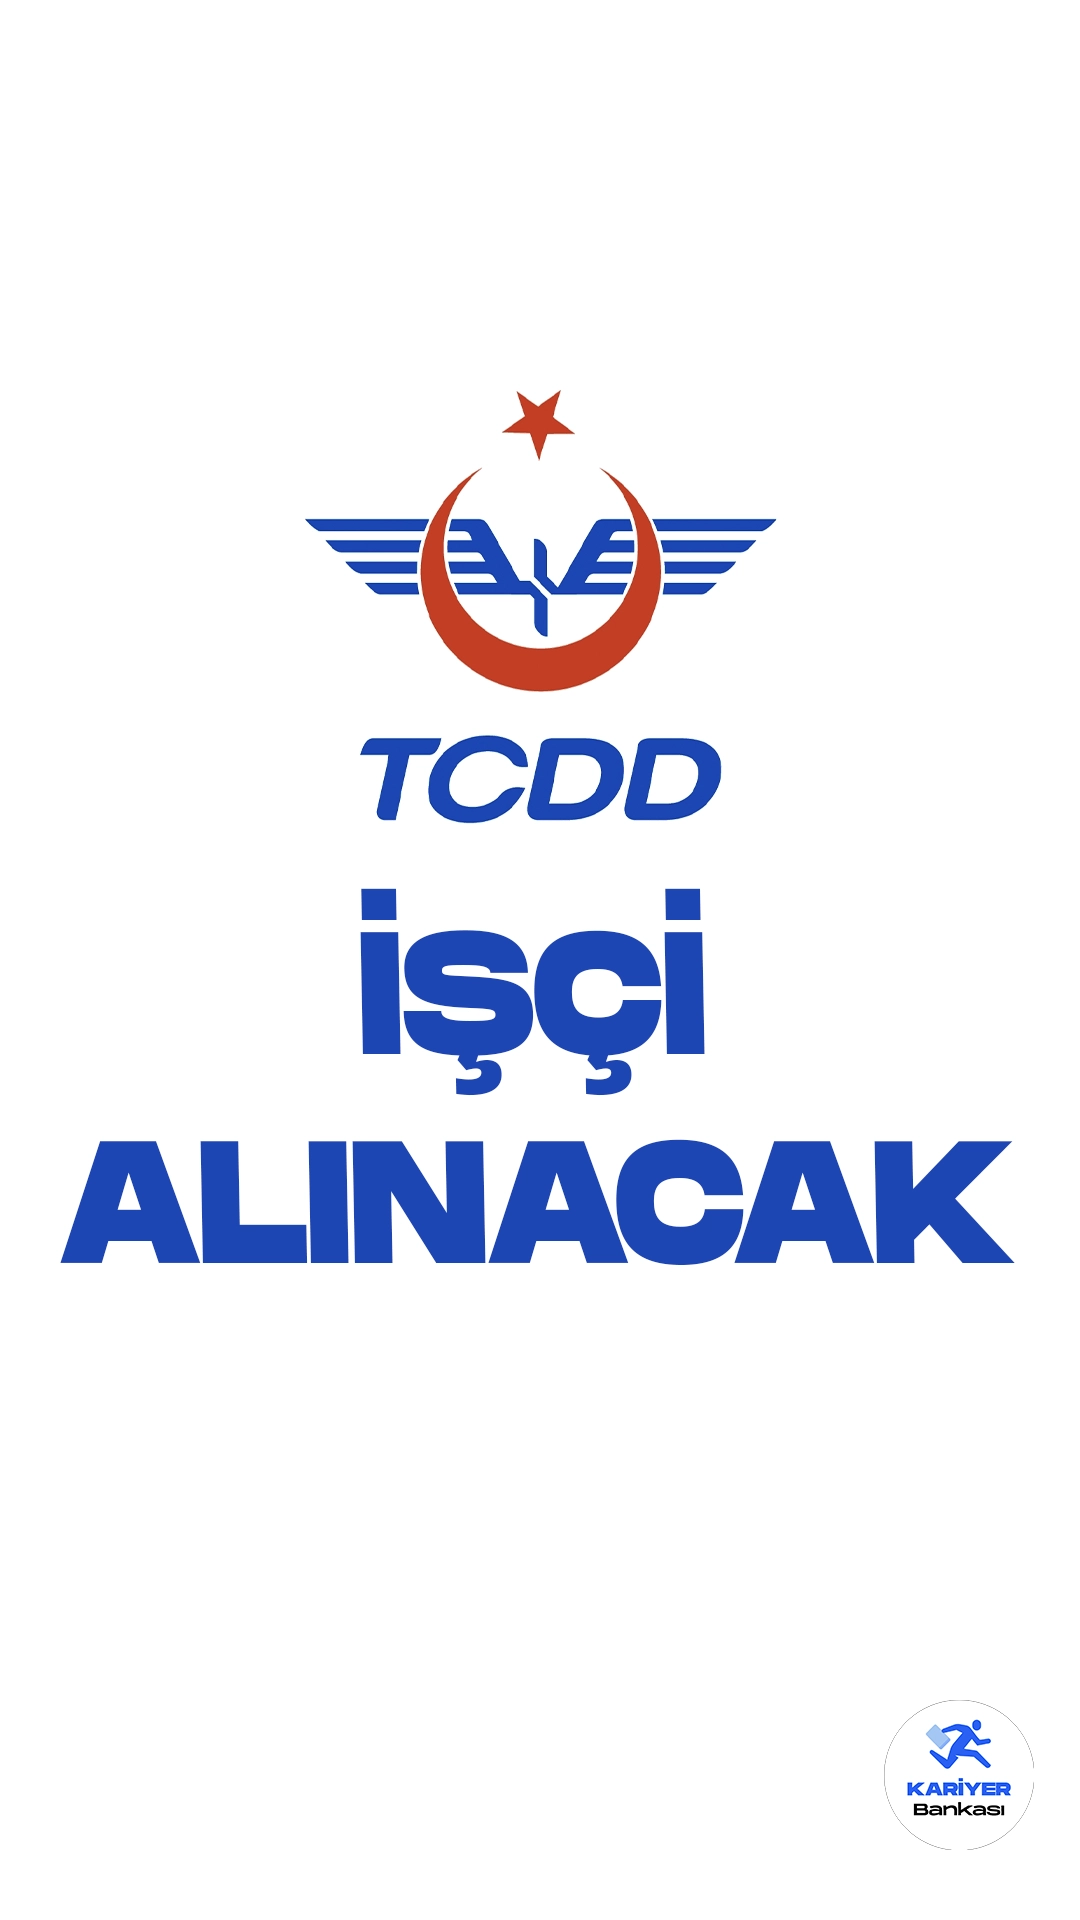 TCDD 24 İşçi Alımı Başvurularında Son Saatler. Türkiye Cumhuriyeti Devlet Demiryolları (TCDD) işçi alımı başvurularında son saatlere girildi.Cumhurbaşkanlığı SBB ve İŞKUR üzerinden yayımlanan duyurularda, TCDD’ye sürekli işçi alımı yapılacağı aktarıldı. Başvurular bugün(27 Ekim) sona eriyor.Başvuru yapacak adayların genel ve özel şartları taşıması gerekmektedir.